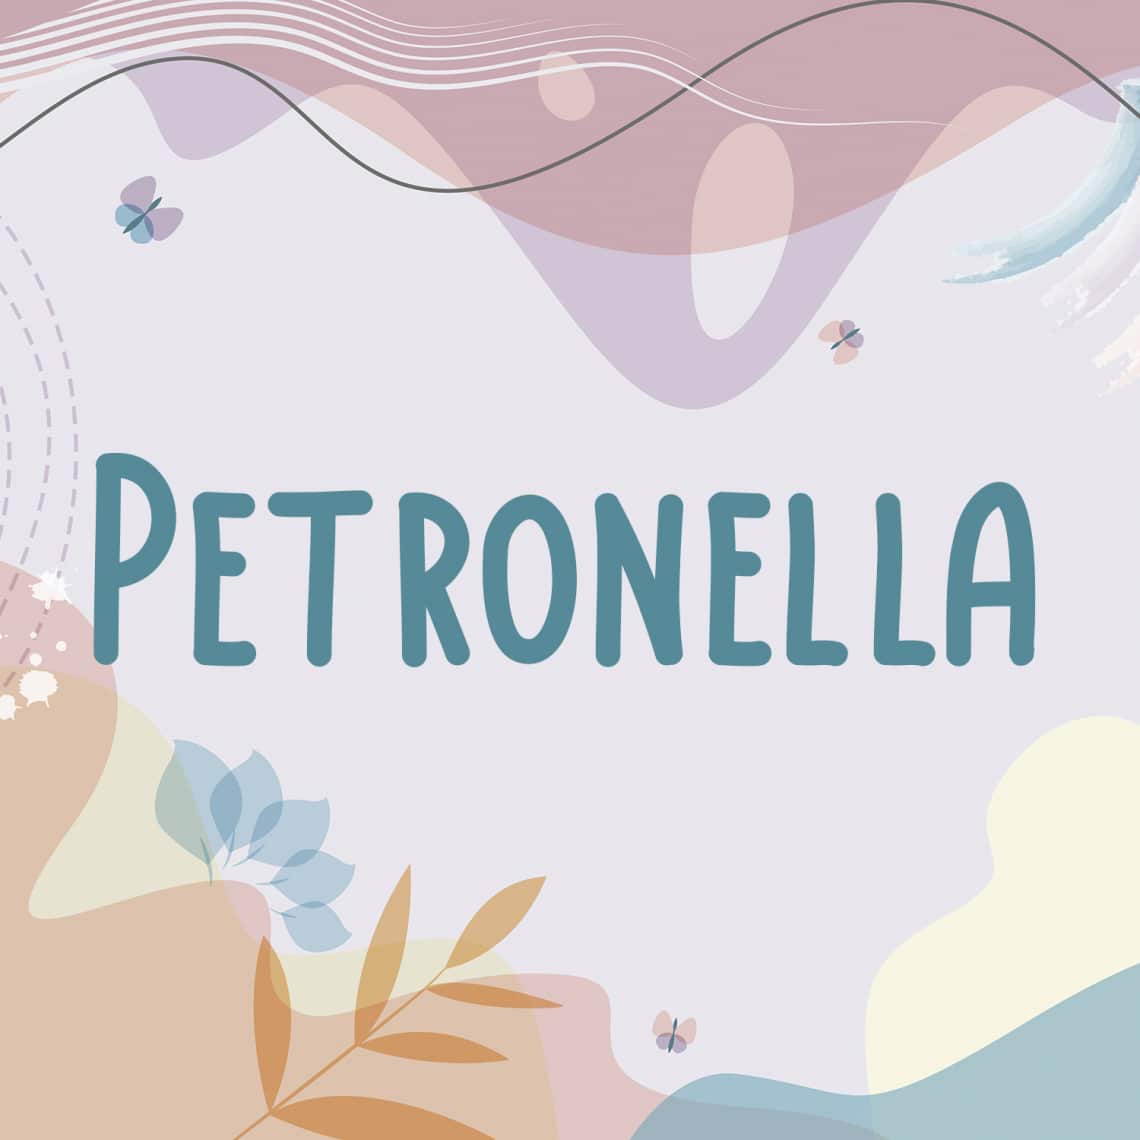 Petronella